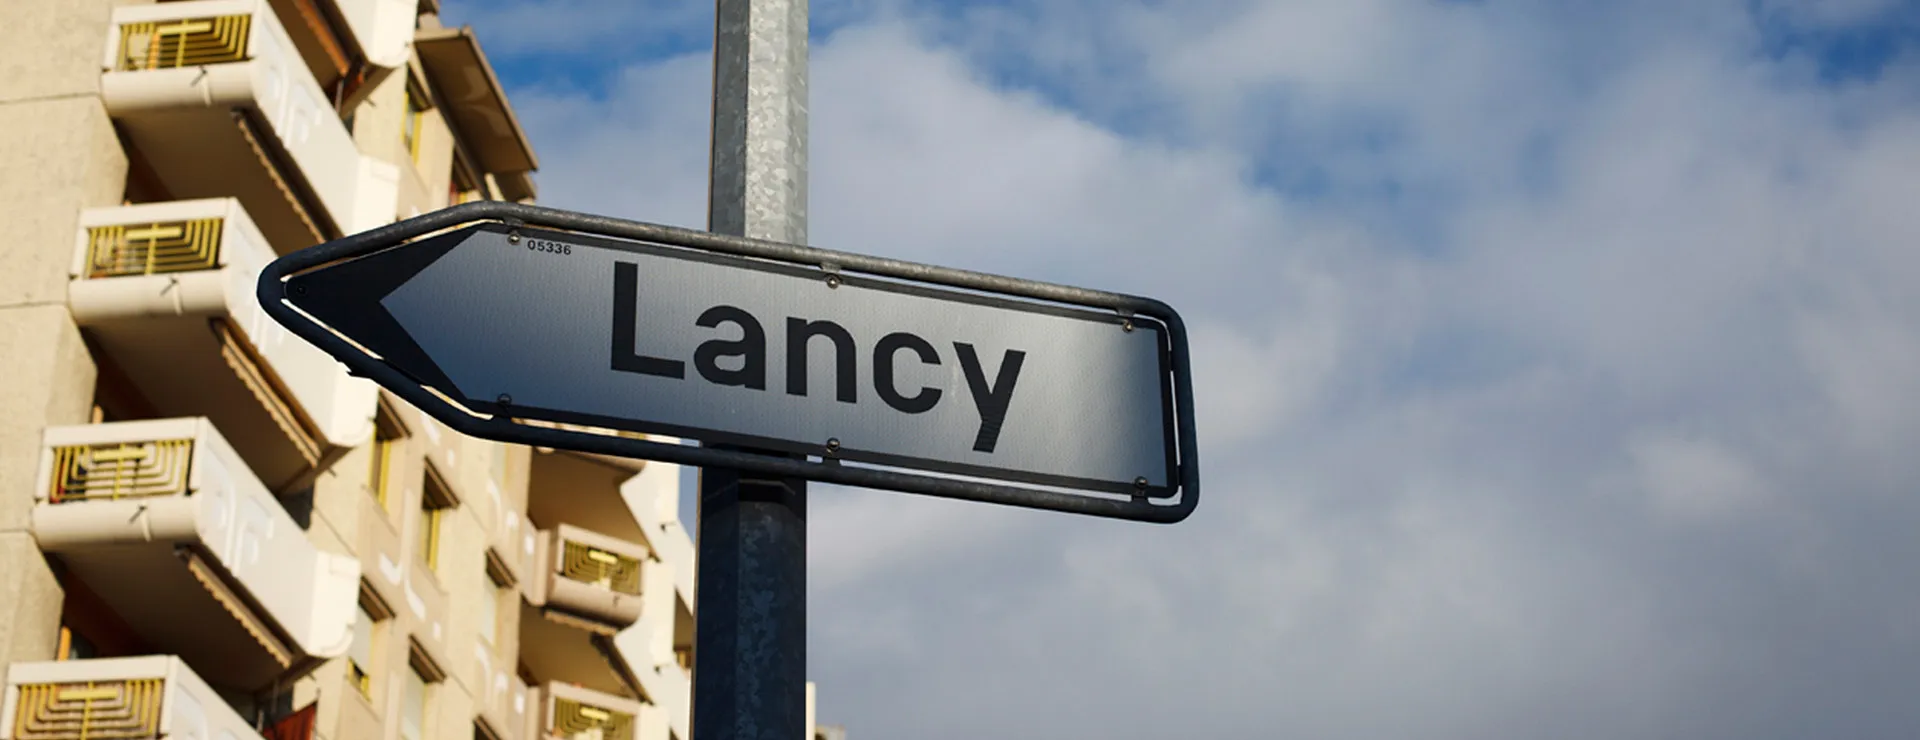 Ville de Lancy